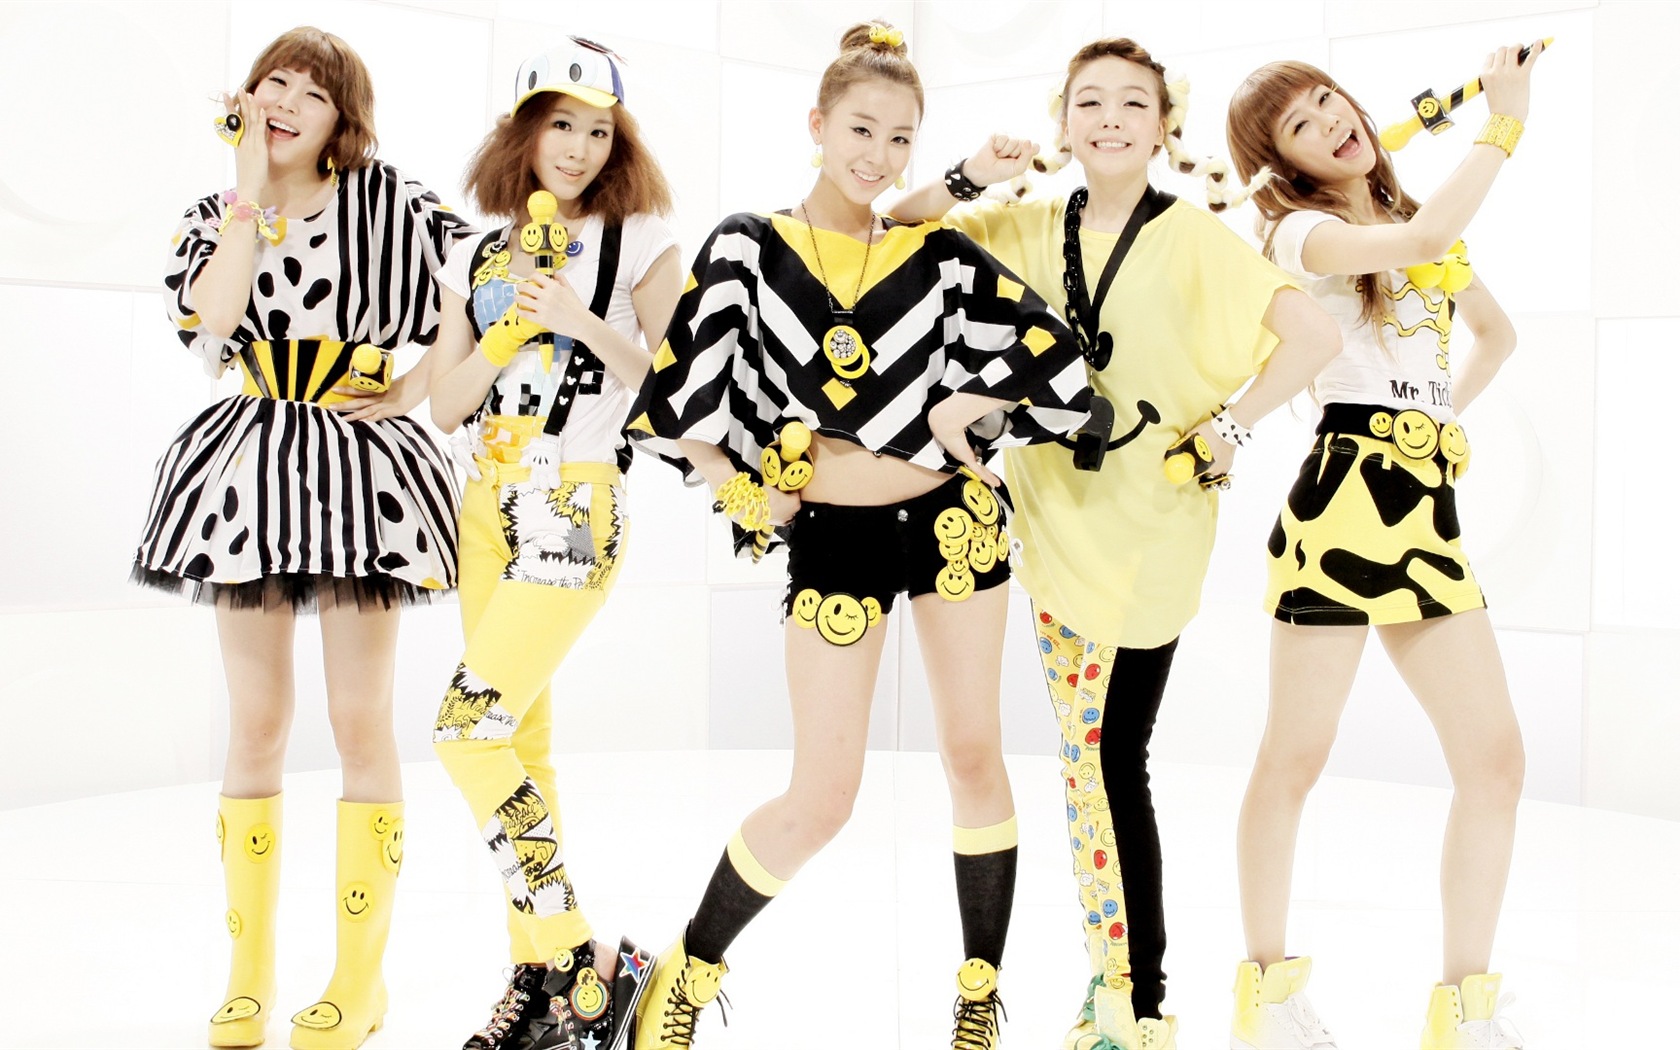 Día de Corea del música pop Girls Wallpapers HD Chicas #8 - 1680x1050